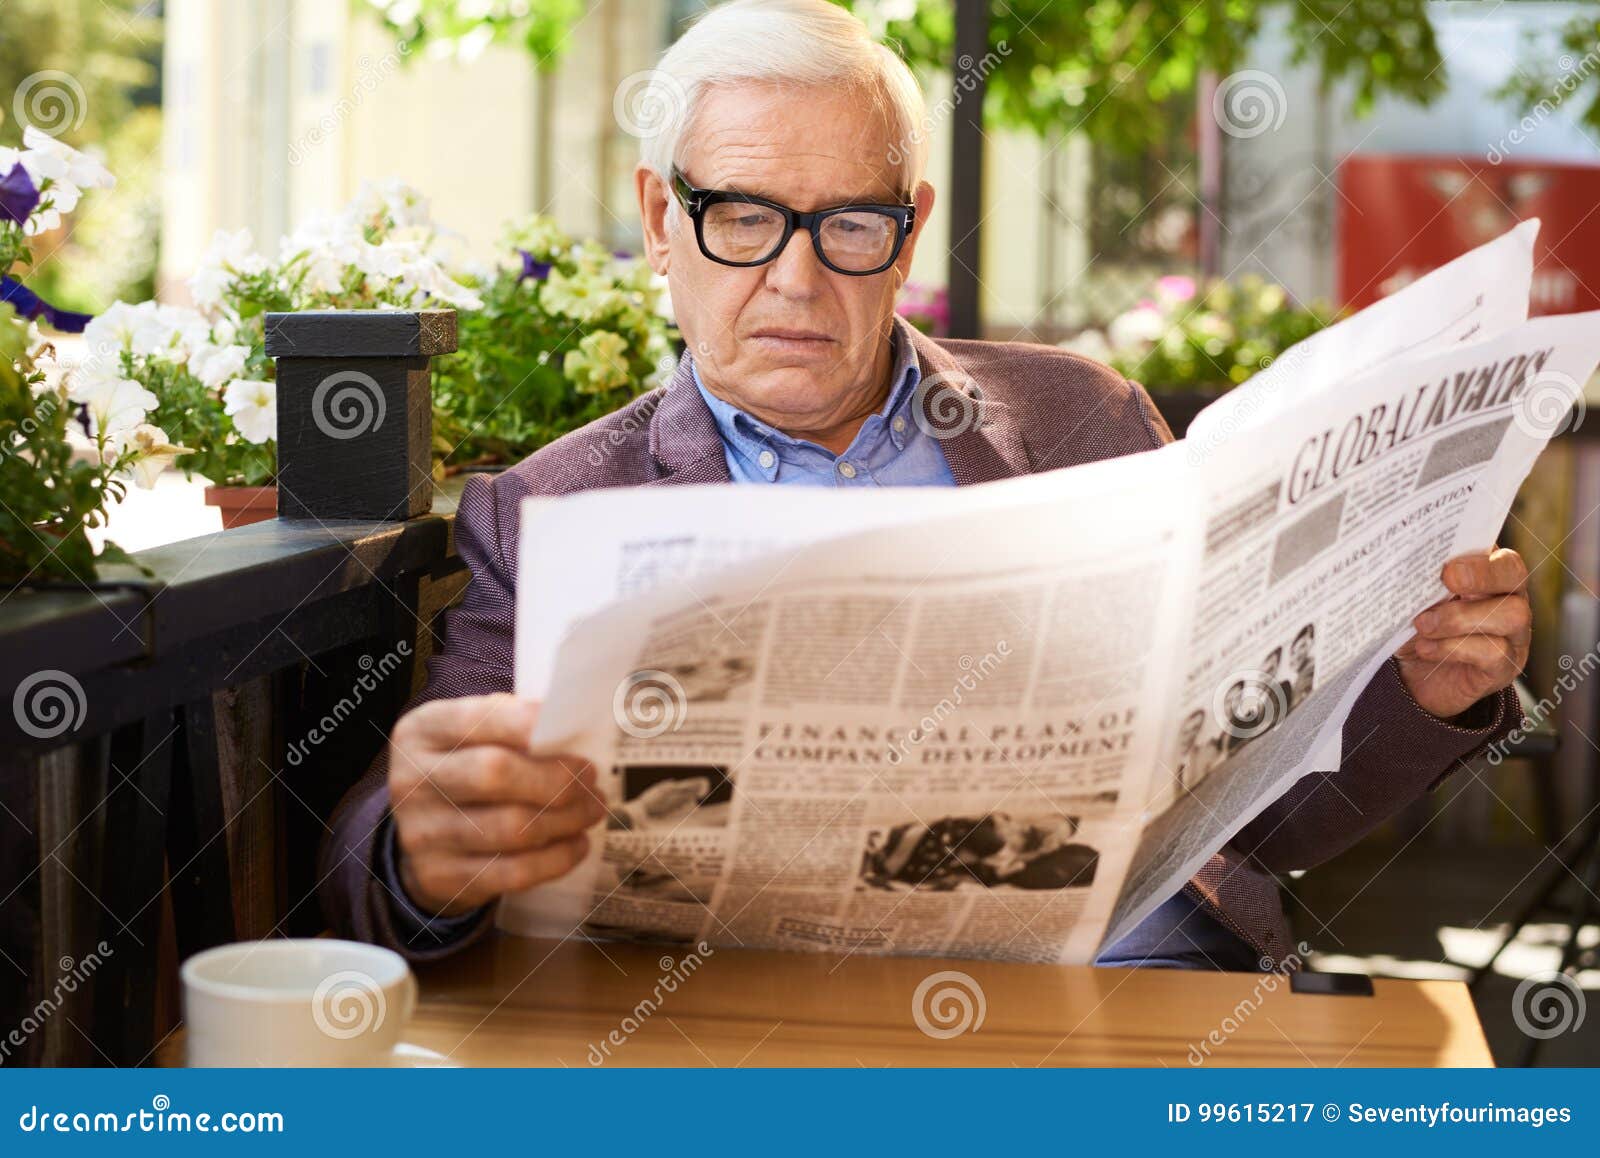 Newspaper man. Мужчина читает газету в очках. Пожилой человек читает газету. Люди в кафе с газетами. Мужчина с газетой в кафе.